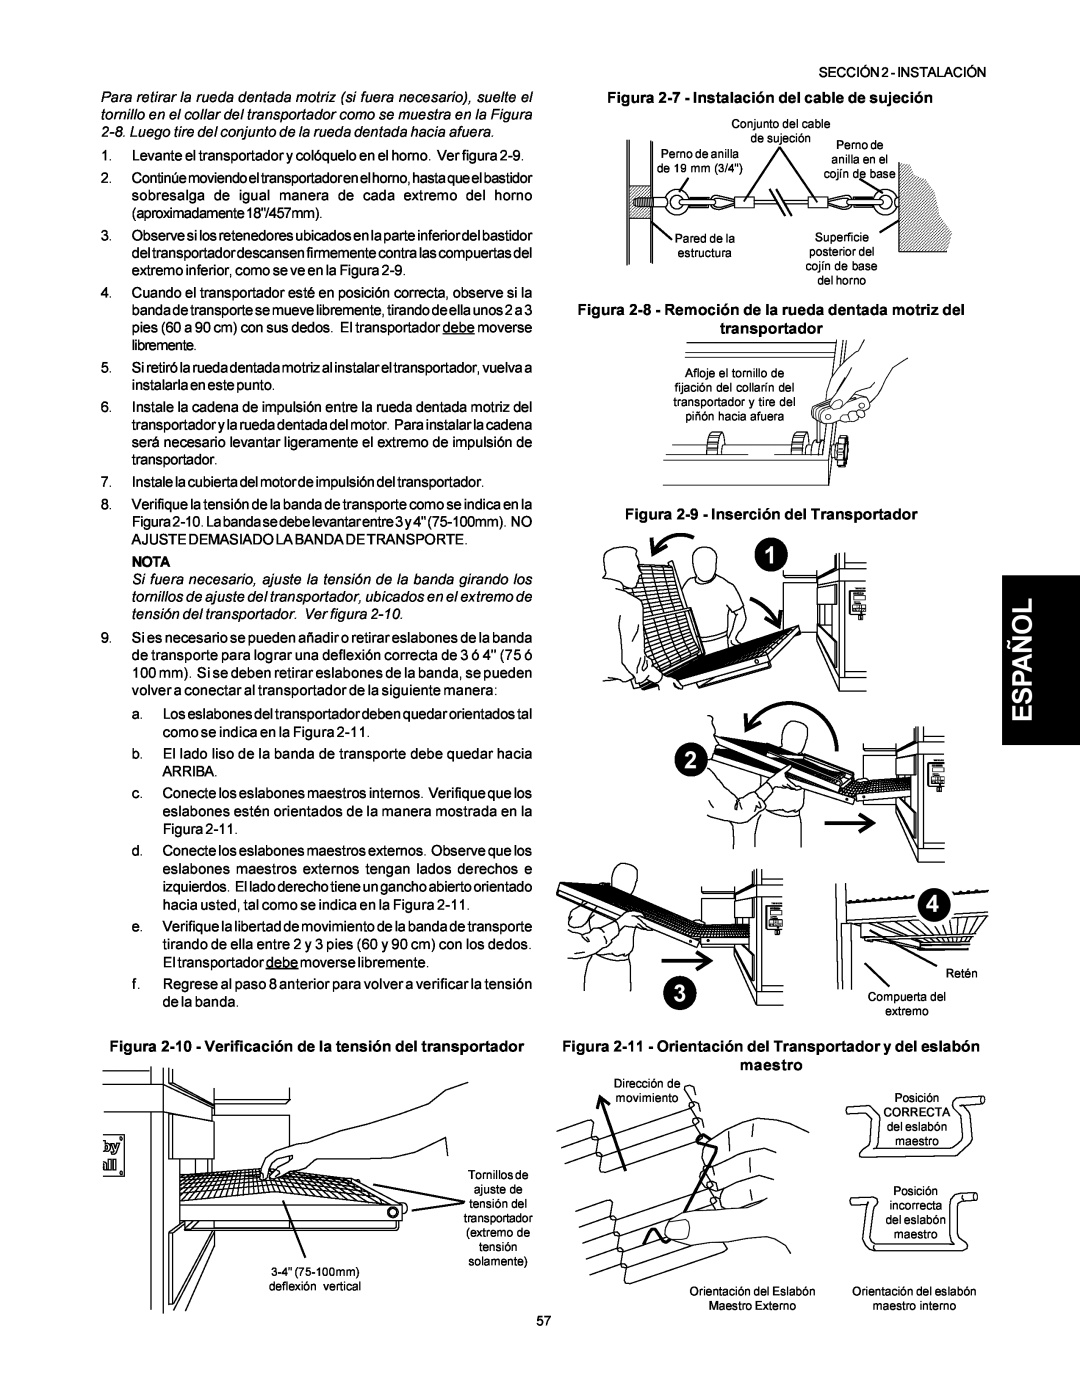 Middleby Marshall PS500 installation manual Español, Figura 2-10 - Verificación de la tensión del transportador, Nota 